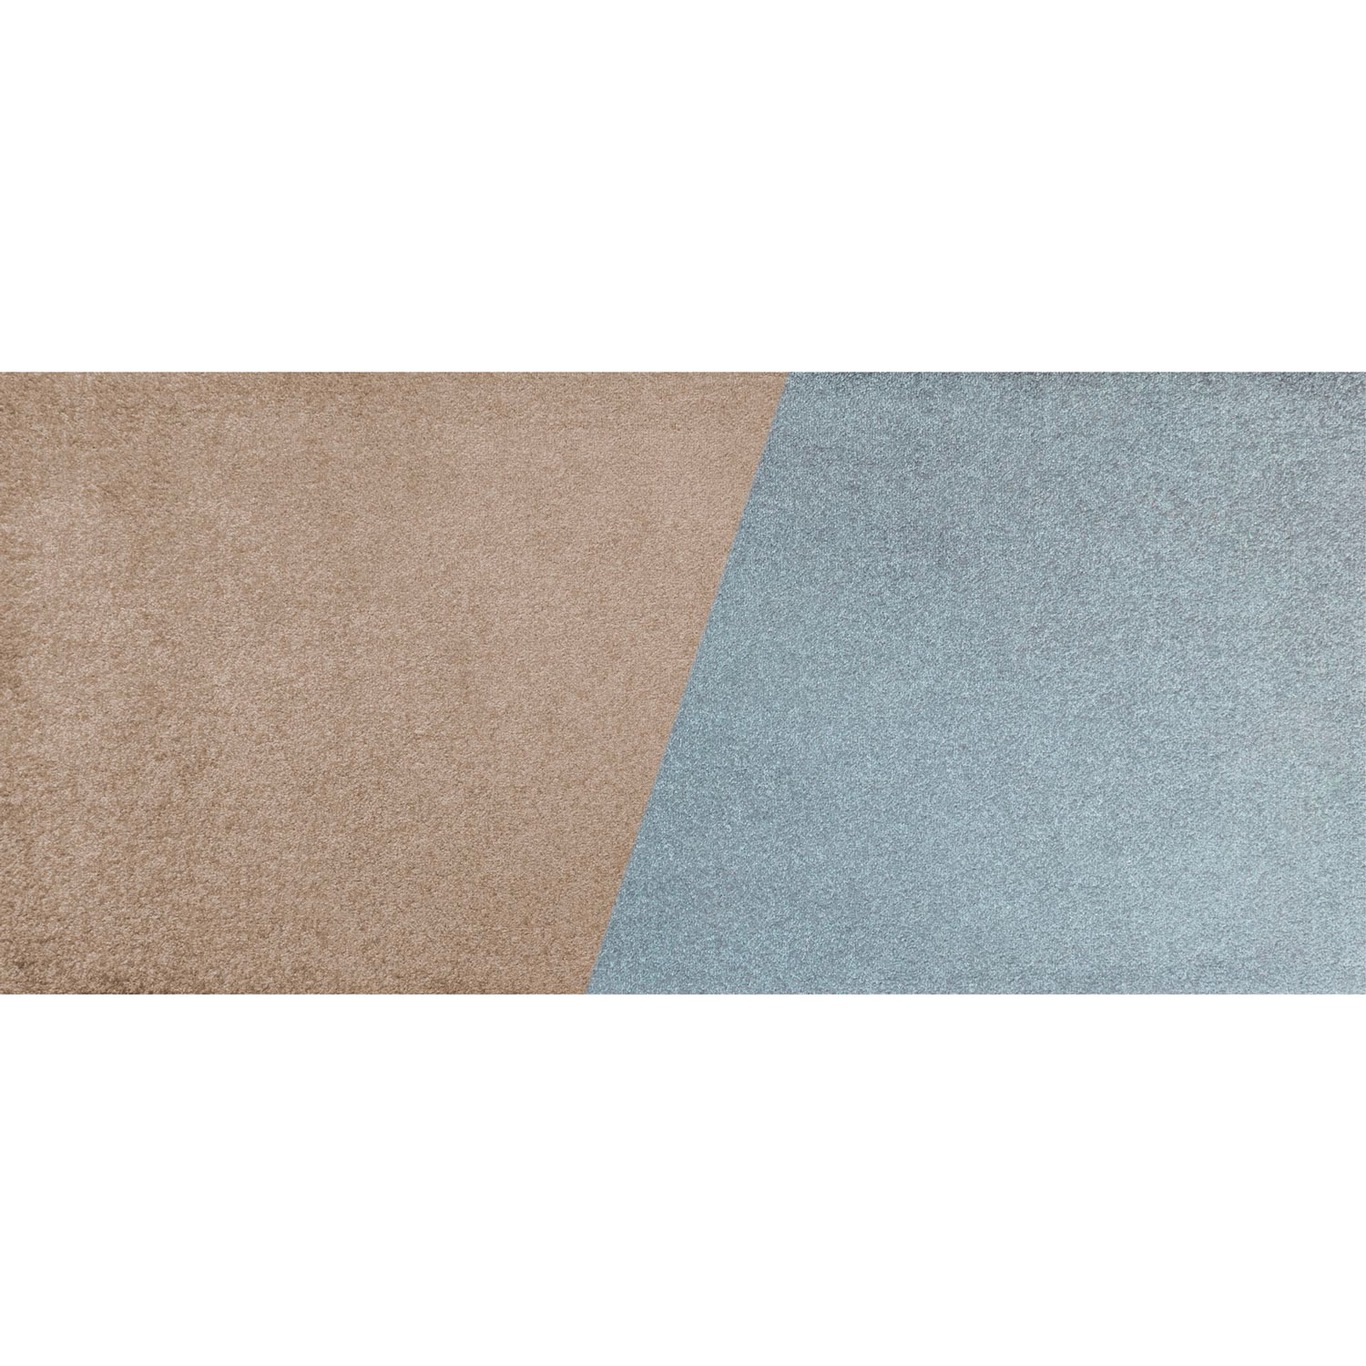 Duet Teppich 70x150 cm, Slate Blue